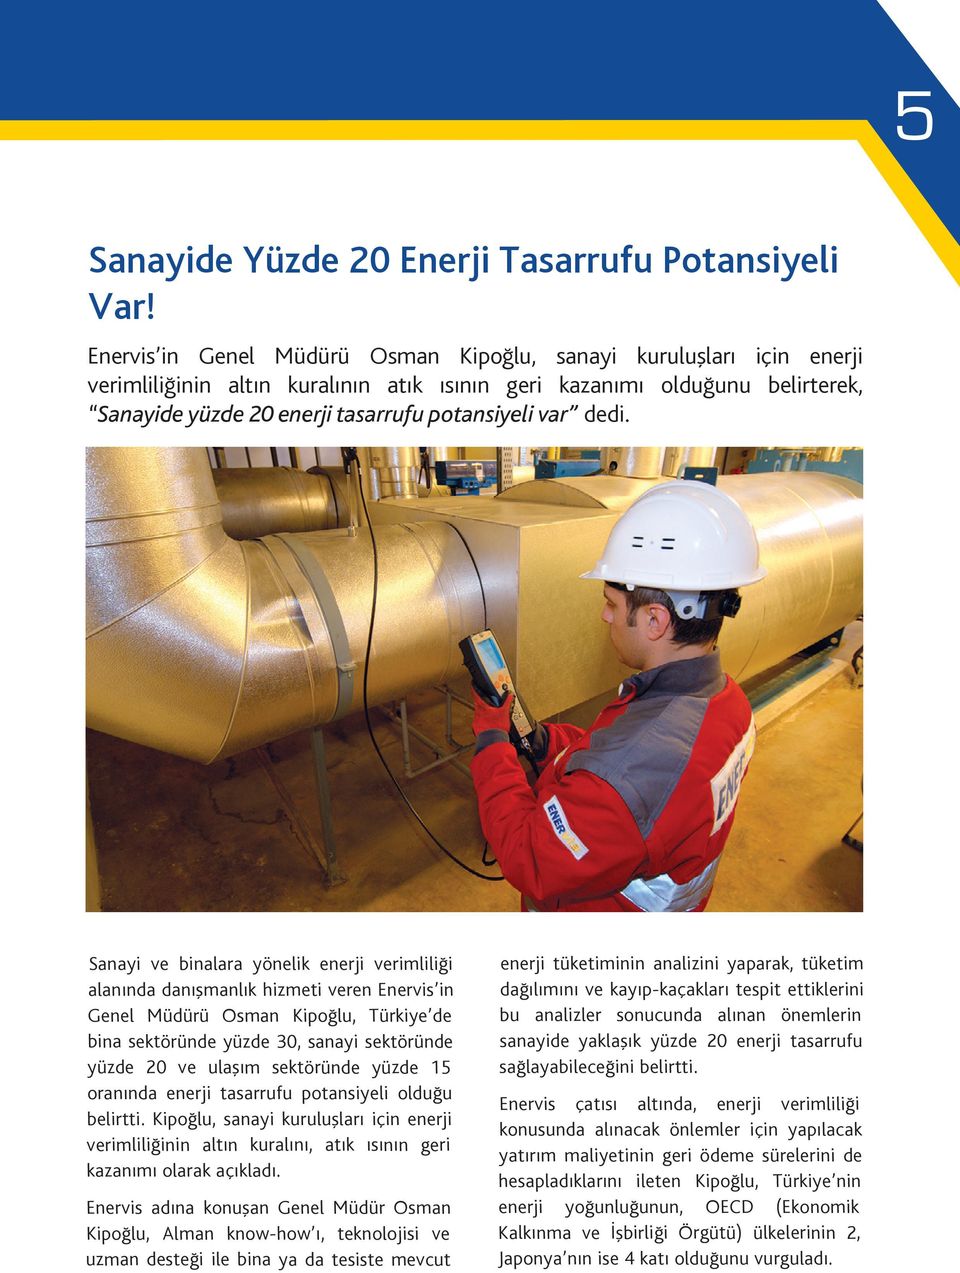 dedi. Sanayi ve binalara yönelik enerji verimliliği alanında danışmanlık hizmeti veren Enervis in Genel Müdürü Osman Kipoğlu, Türkiye de bina sektöründe yüzde 30, sanayi sektöründe yüzde 20 ve ulaşım